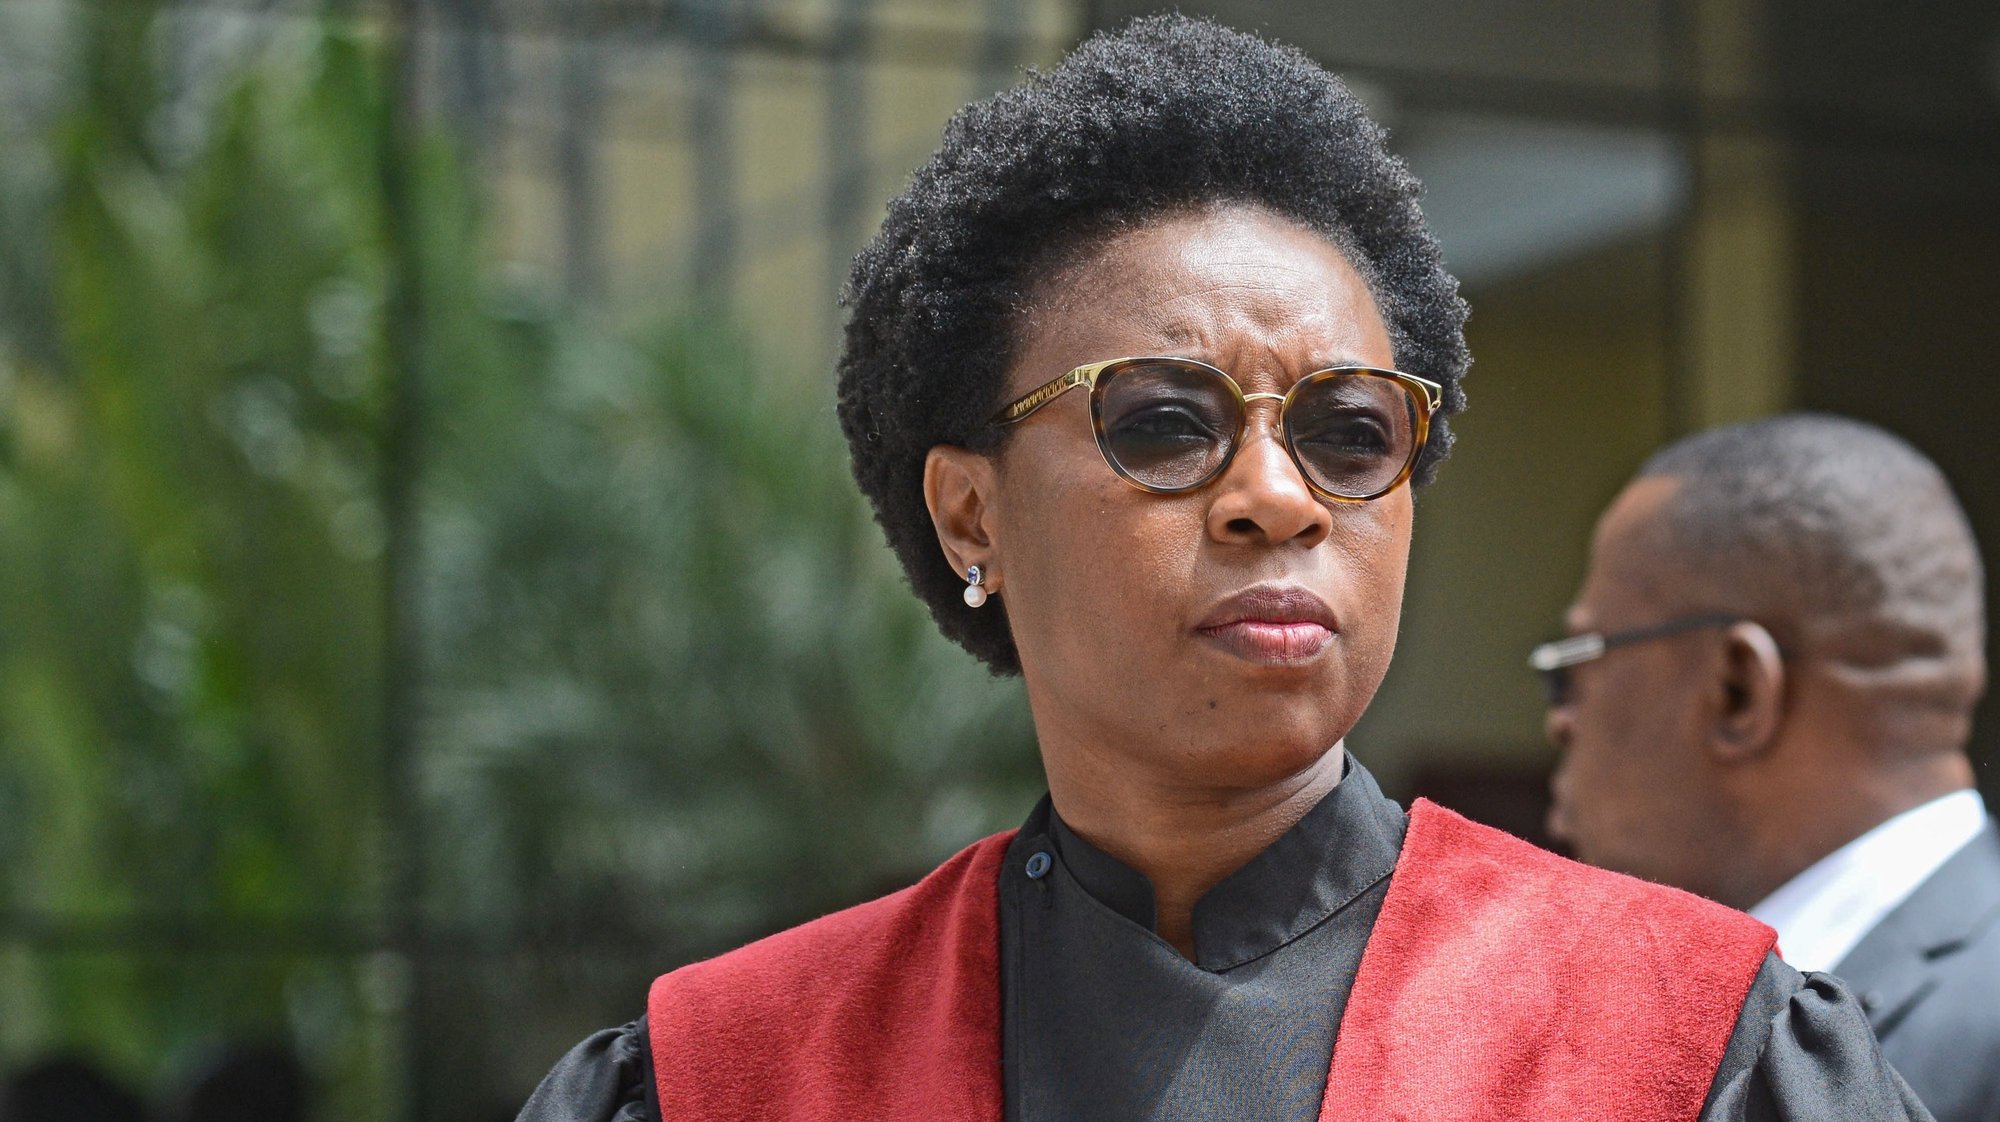 A procuradora-geral da República, Beatriz Buchili, durante a cerimónia oficial de abertura do ano judicial, em Maputo, Moçambique, 04 de fevereiro de 2020. ANTÓNIO SILVA/LUSA